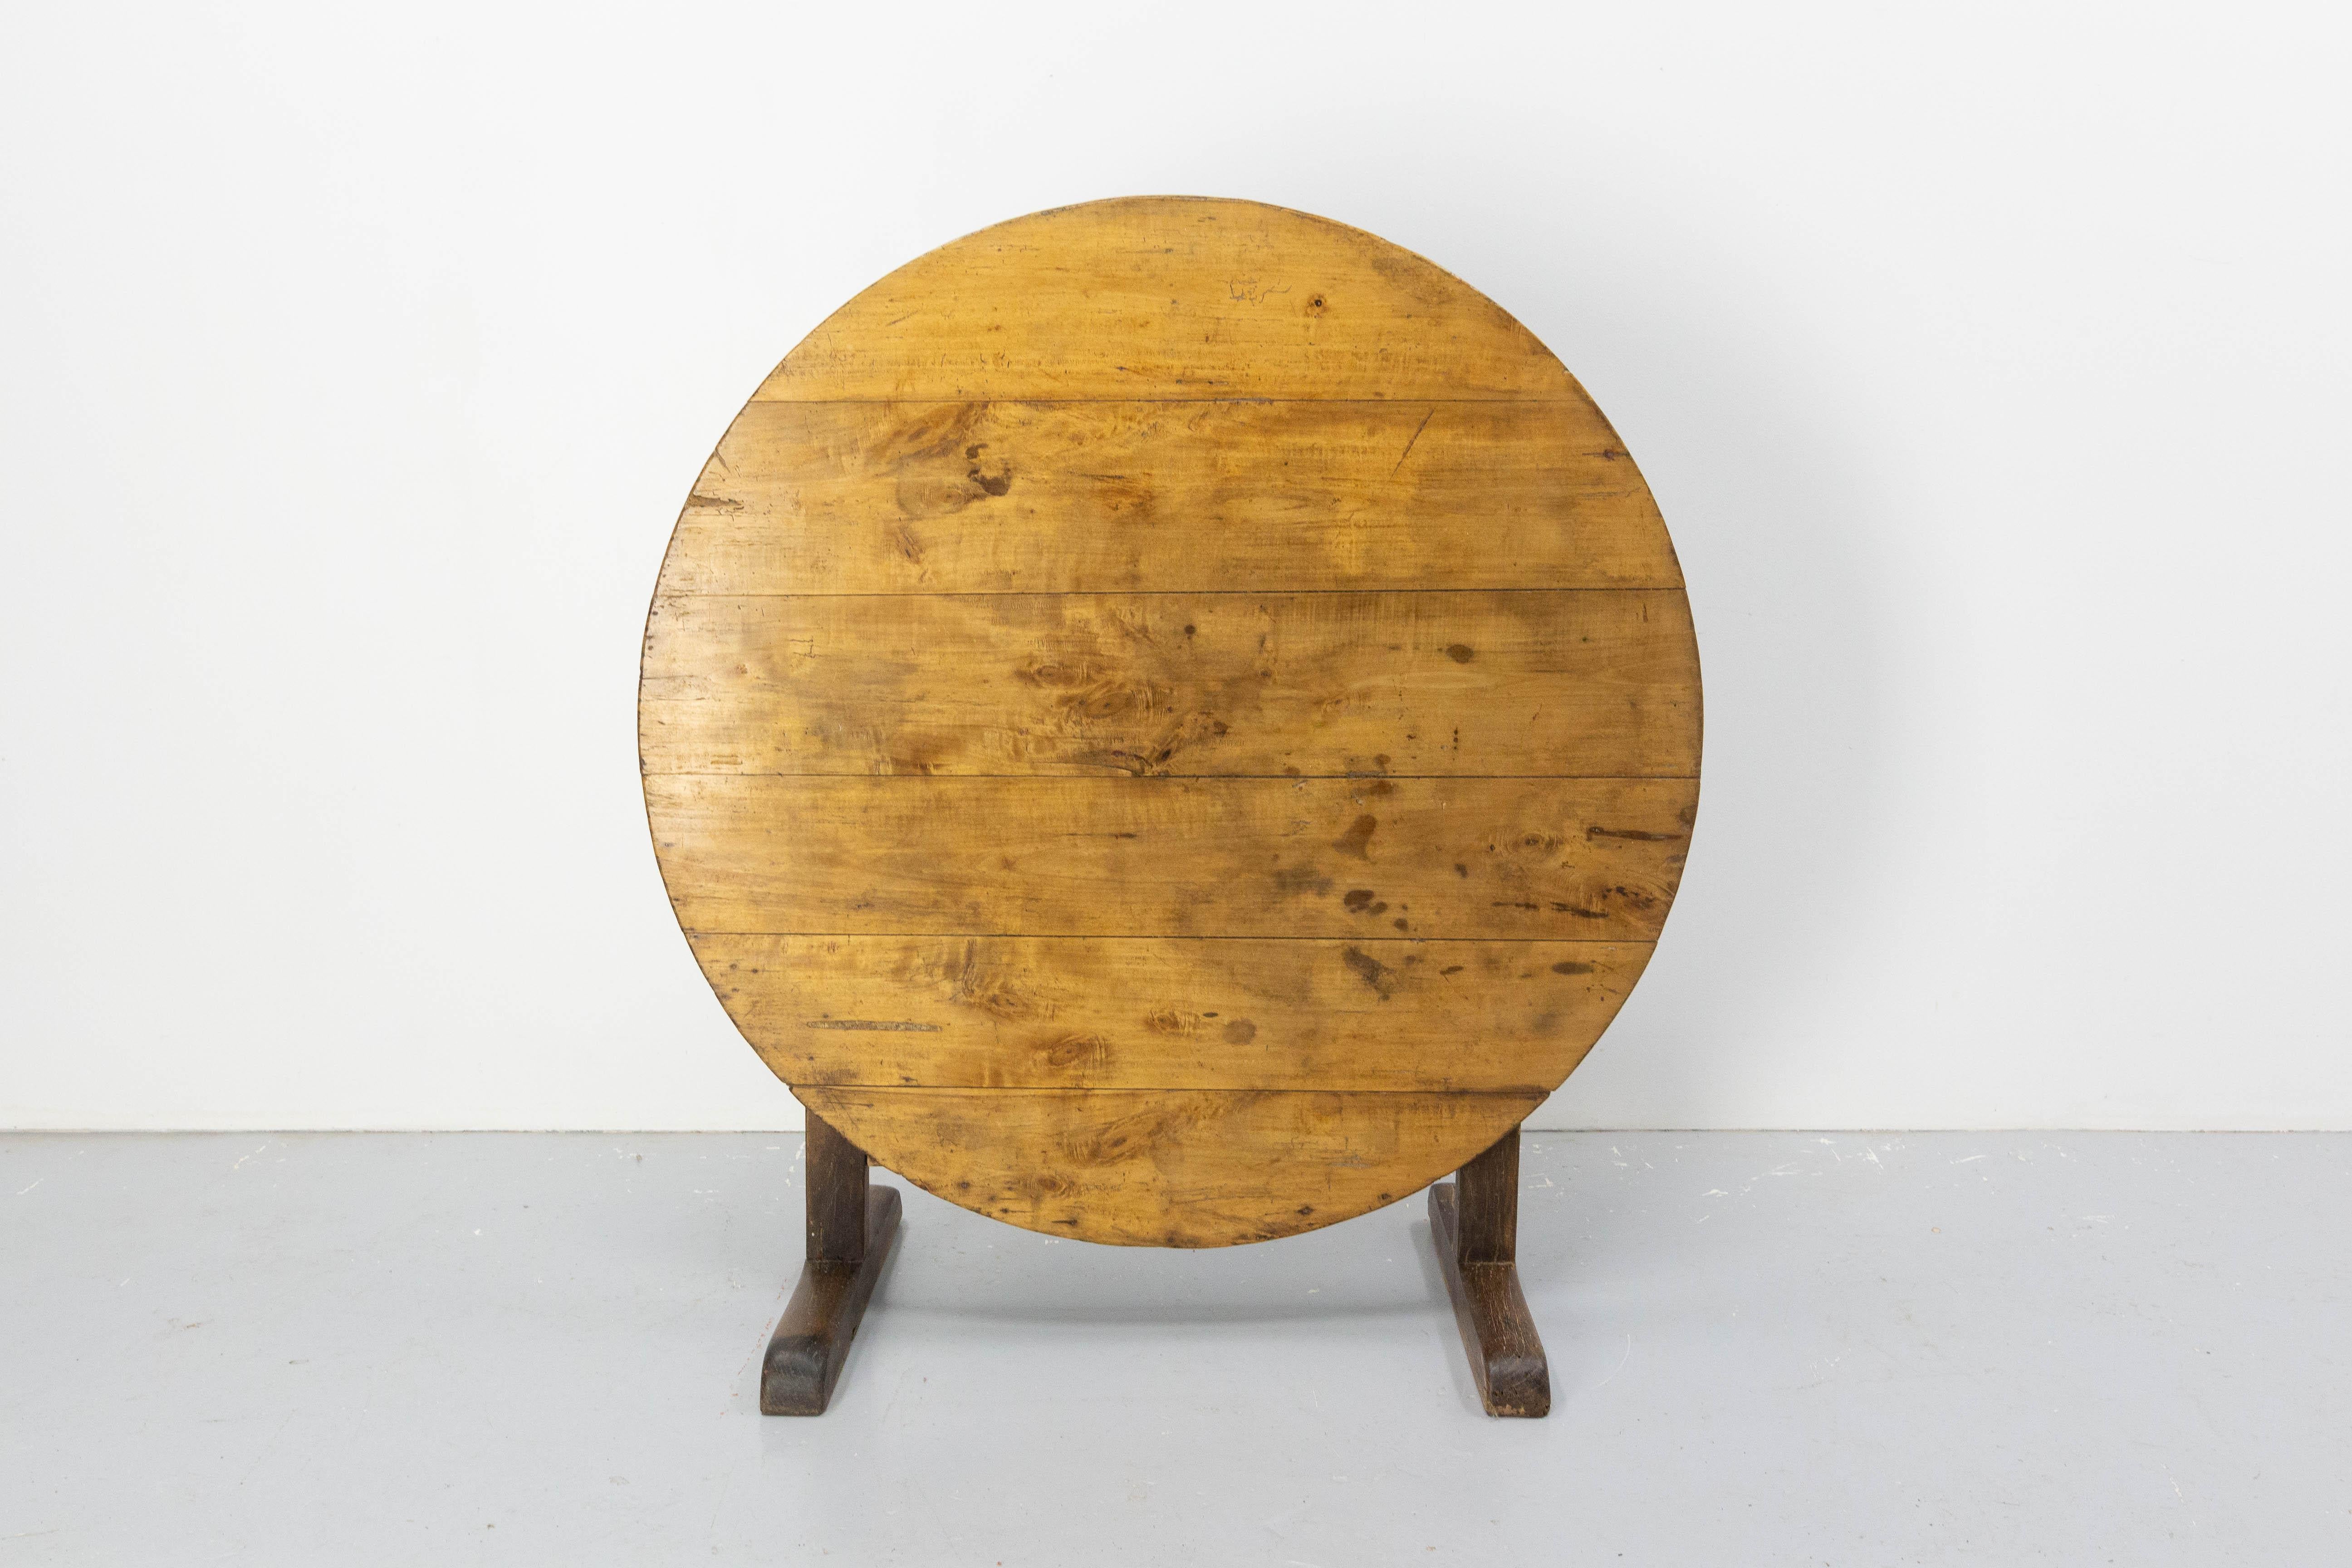 Französischer Tisch aus Eiche und Pappelholz aus der Mitte des 19. Jahrhunderts.
Die 